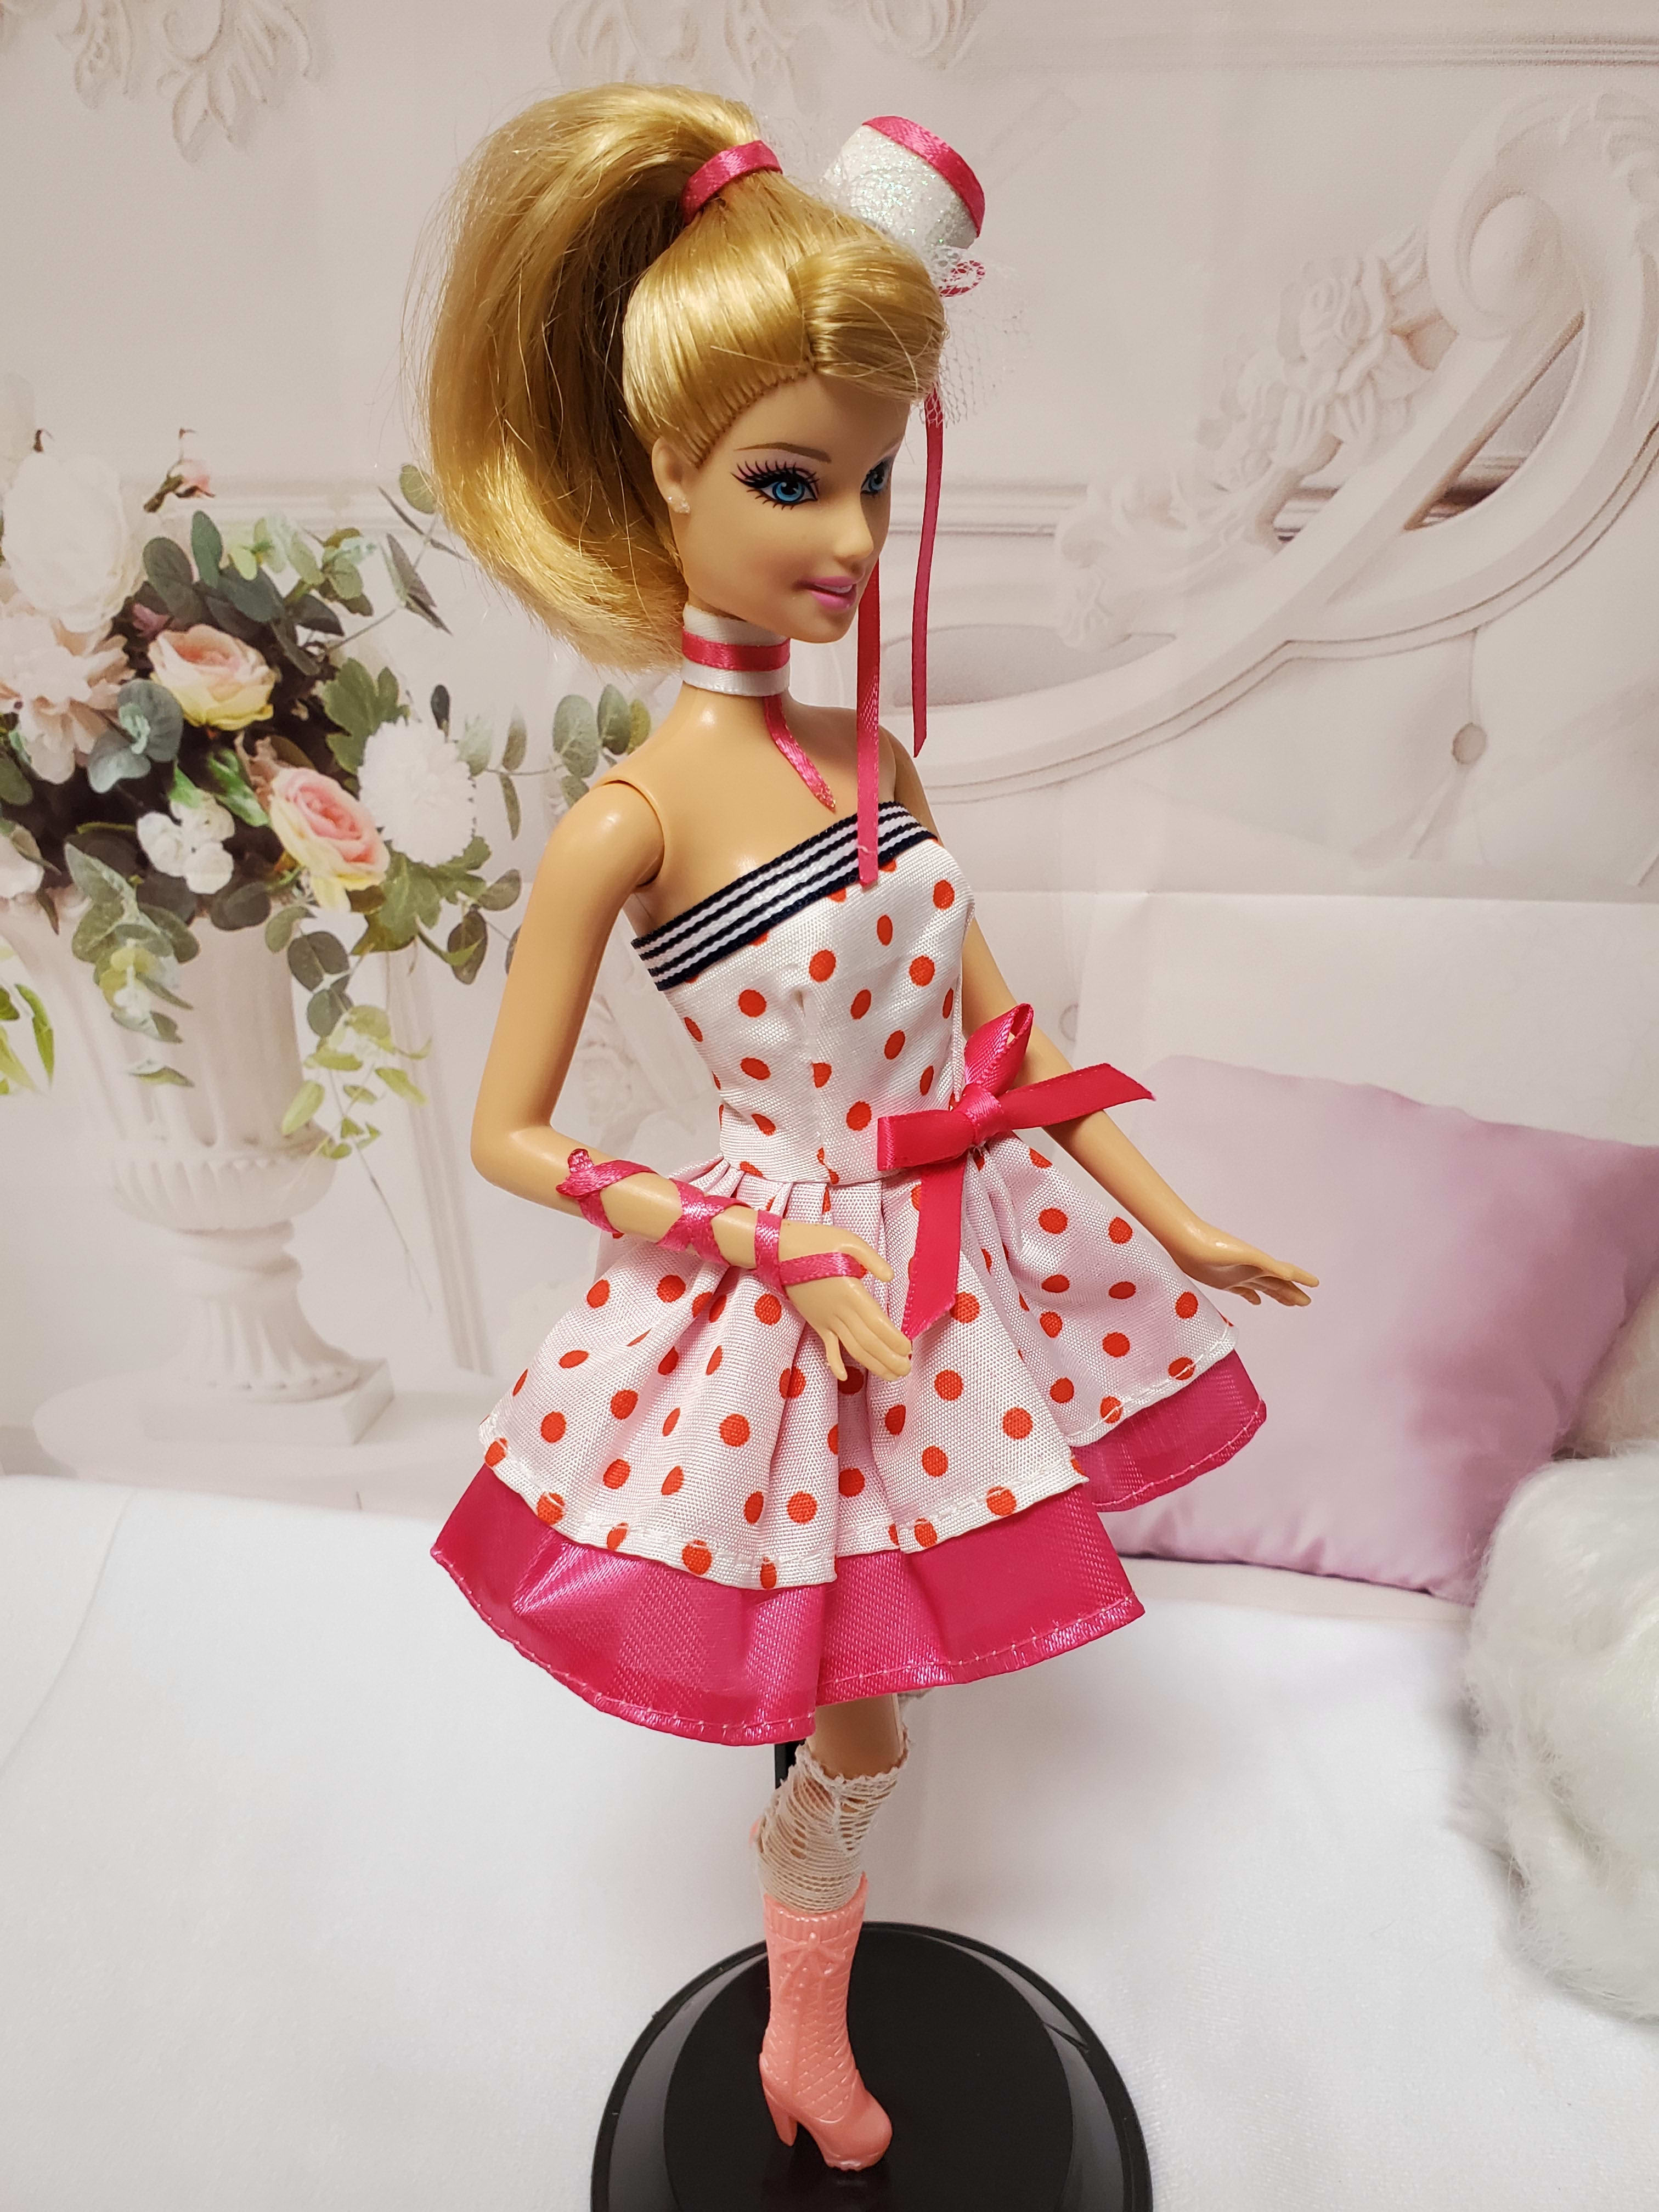 Barbie Doll Hand Crafted Pink Bra, Panties & heels for OOAK dolls